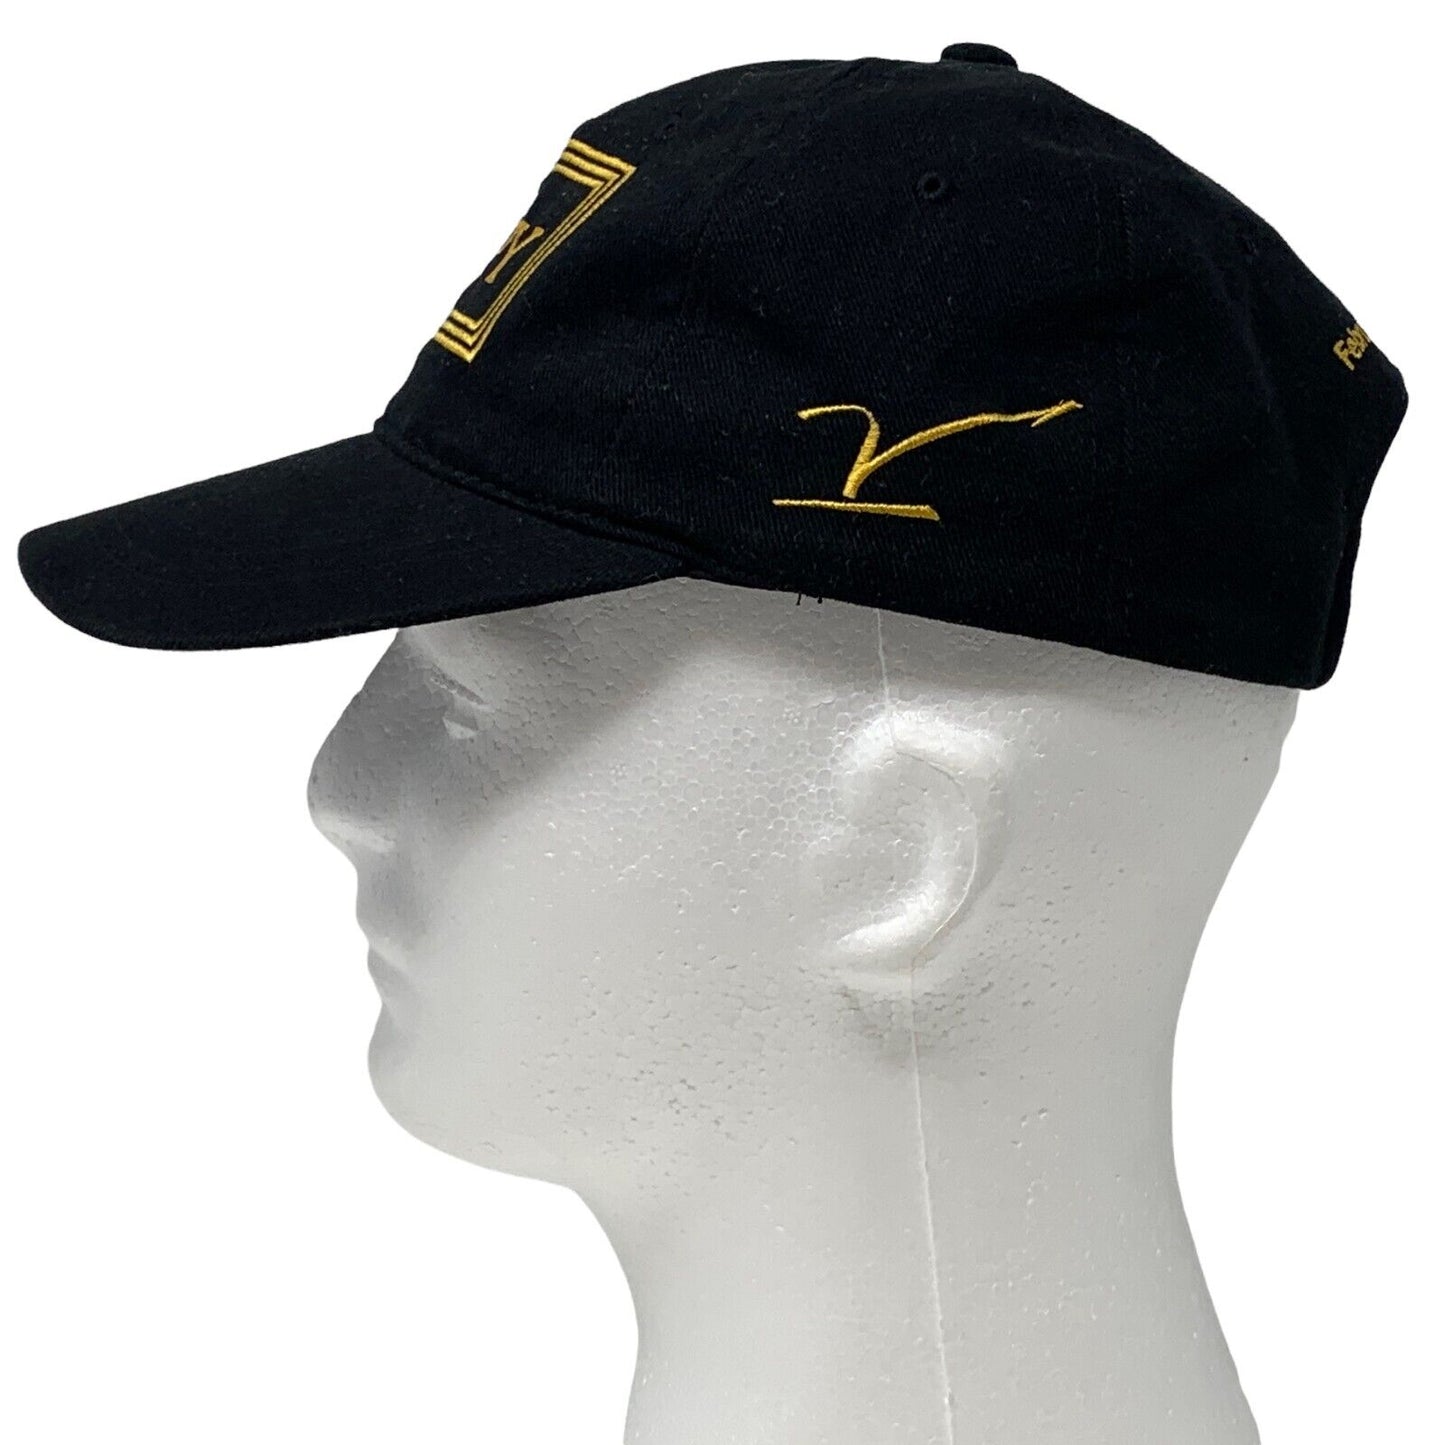 2001 年 Espy 奖背带帽复古 Y2Ks ESPN 体育 6 面板棒球帽